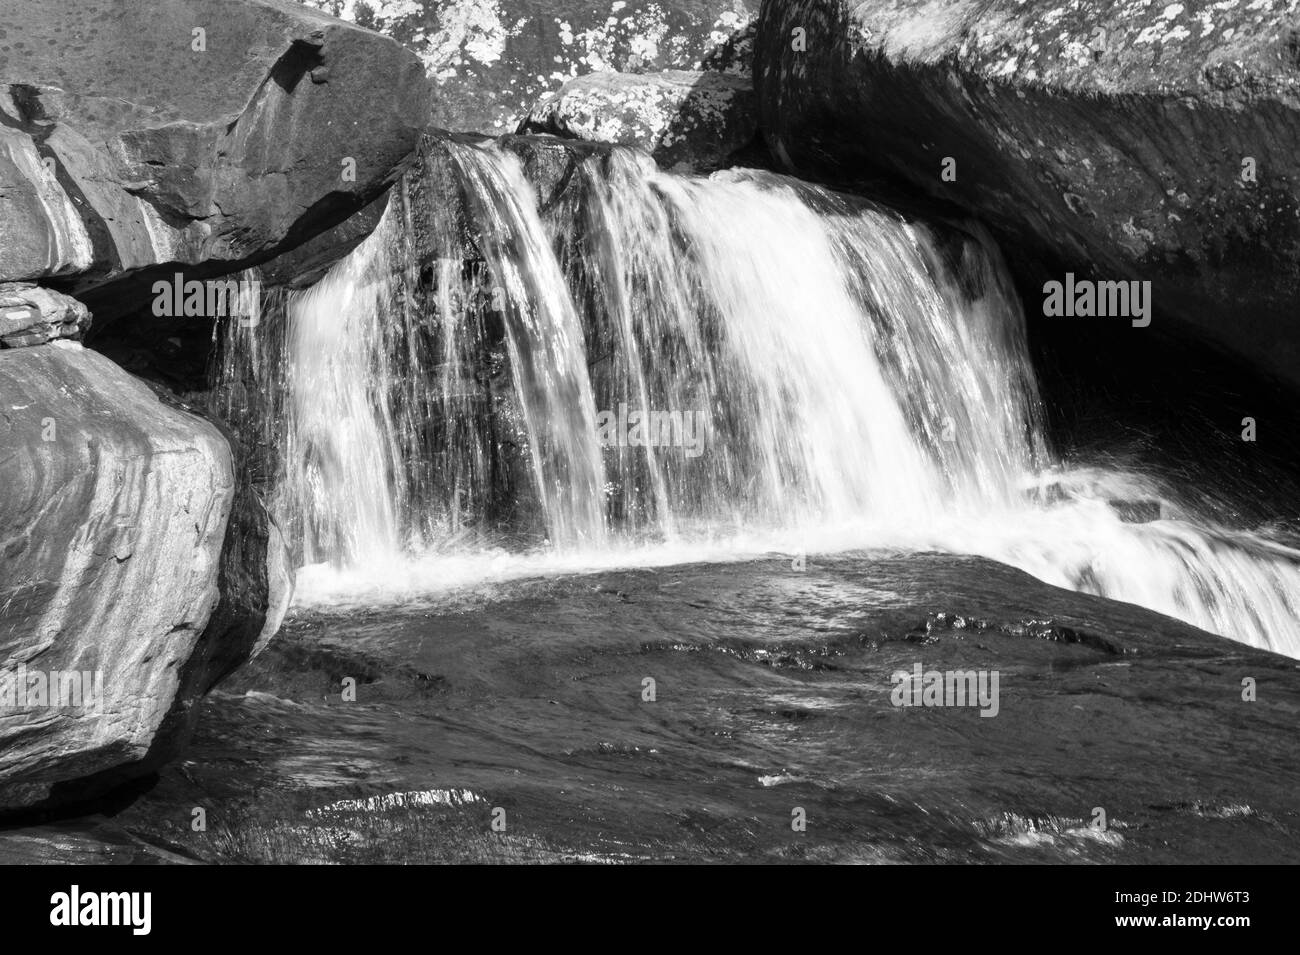 Schwarz-weiße Landschaft in einer sonnigen und fließenden Wasserfalllandschaft mit stark fließendem Wasser. Die Szene wird von einer atemberaubenden Felsformation umhüllt Stockfoto